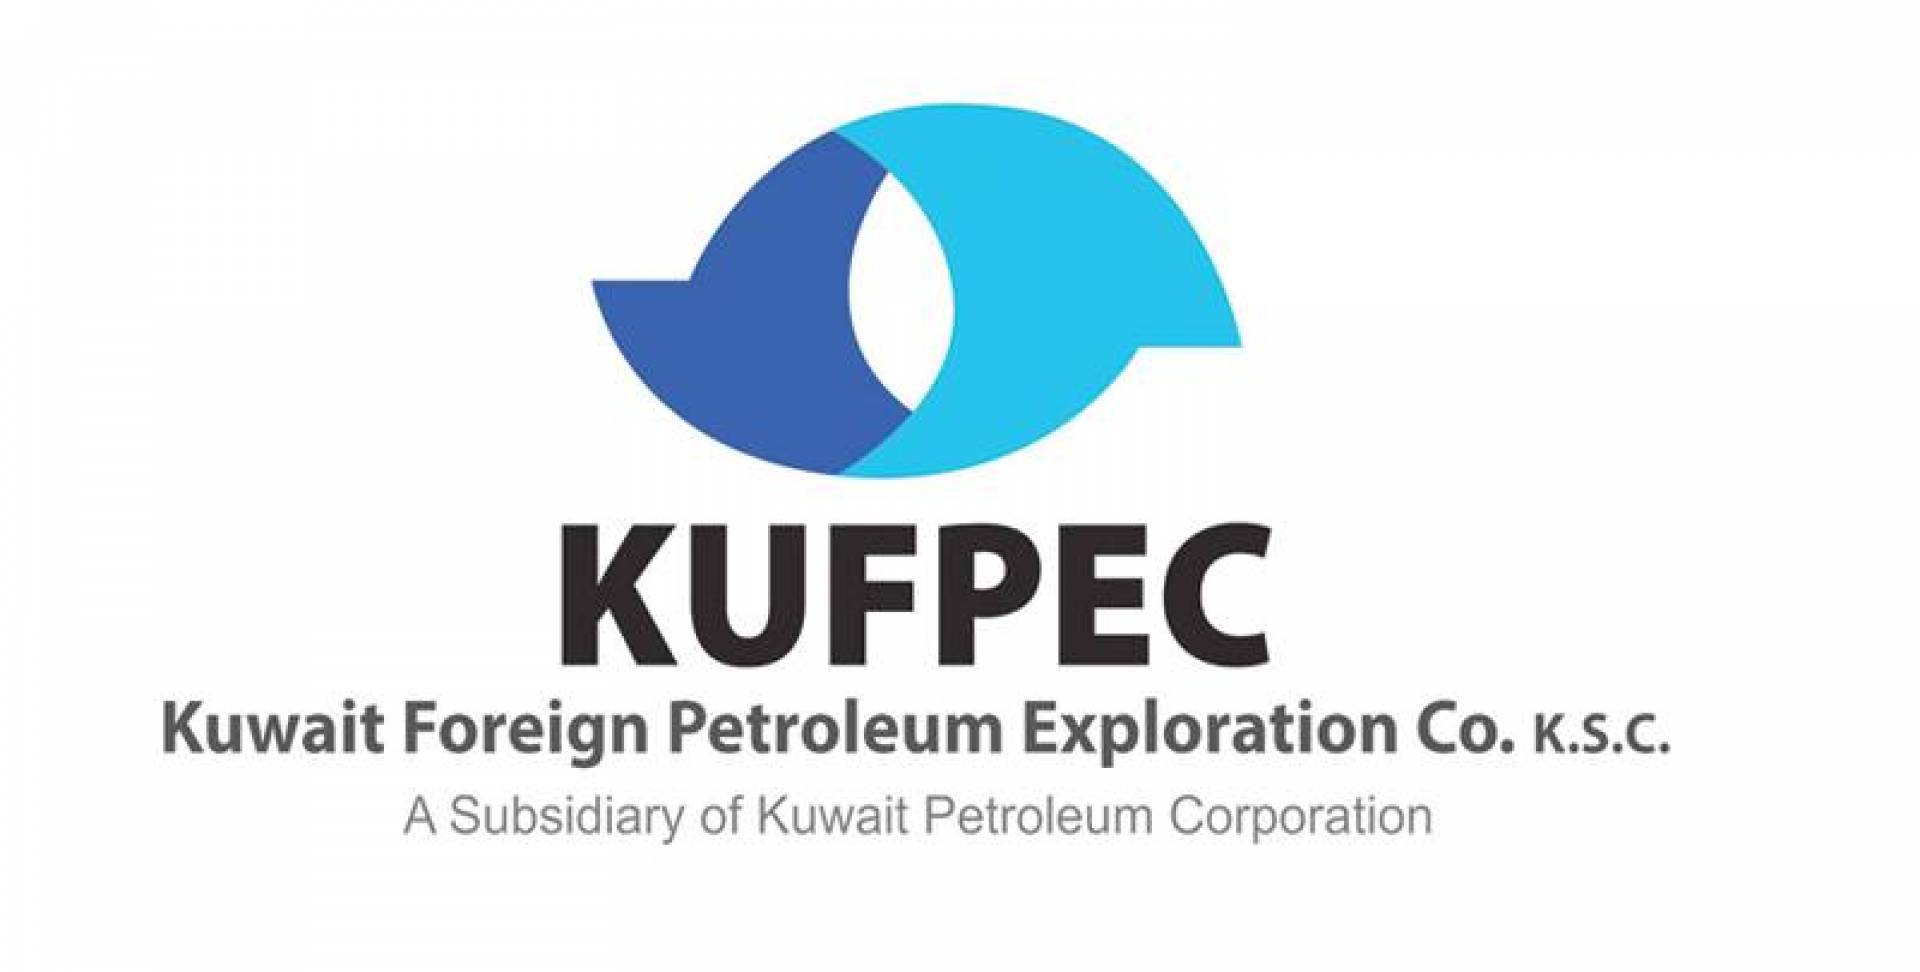 الكويتية للاستكشافات البترولية تعلن عن اكتشاف بحري في اندونيسيا